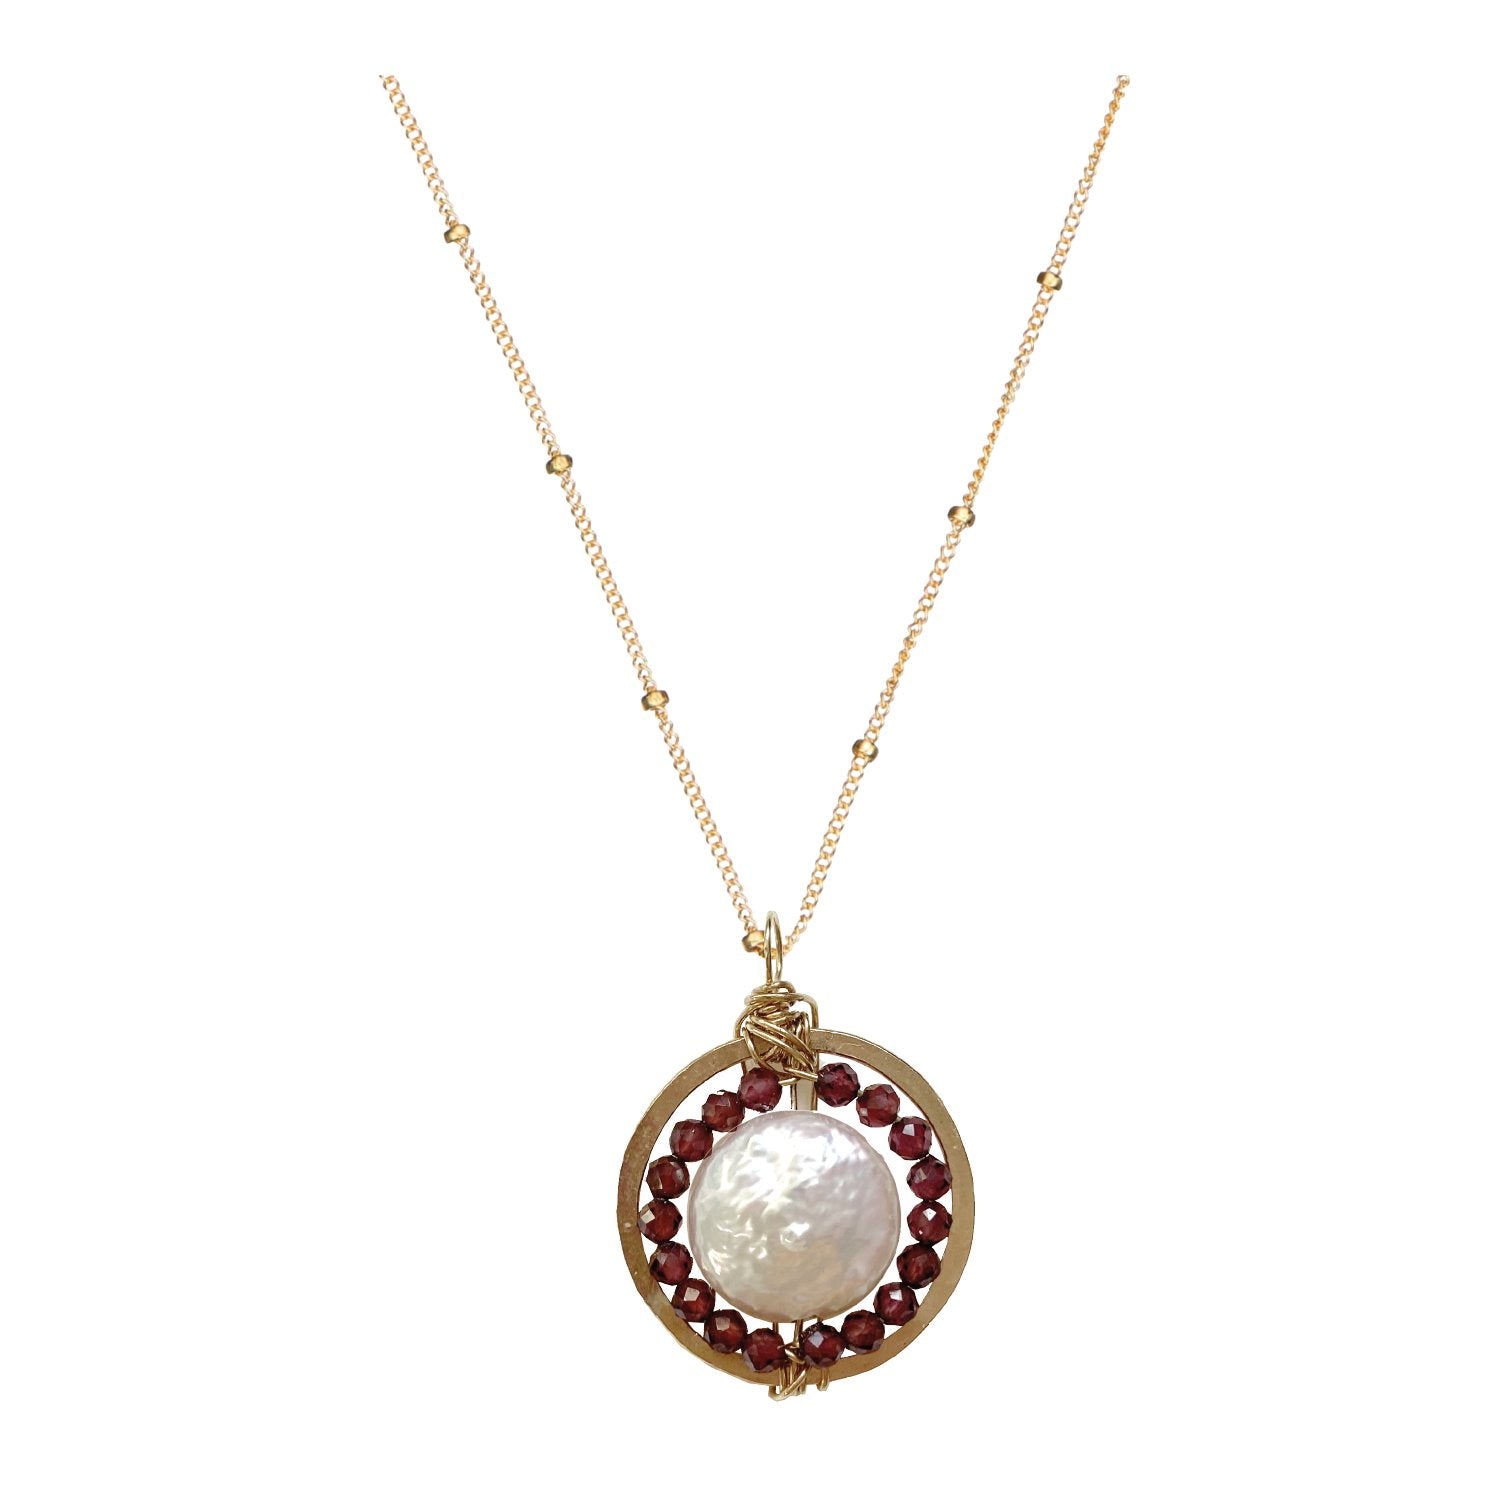 Gemstone Medallion Necklace - Garnet Robyn Canady 